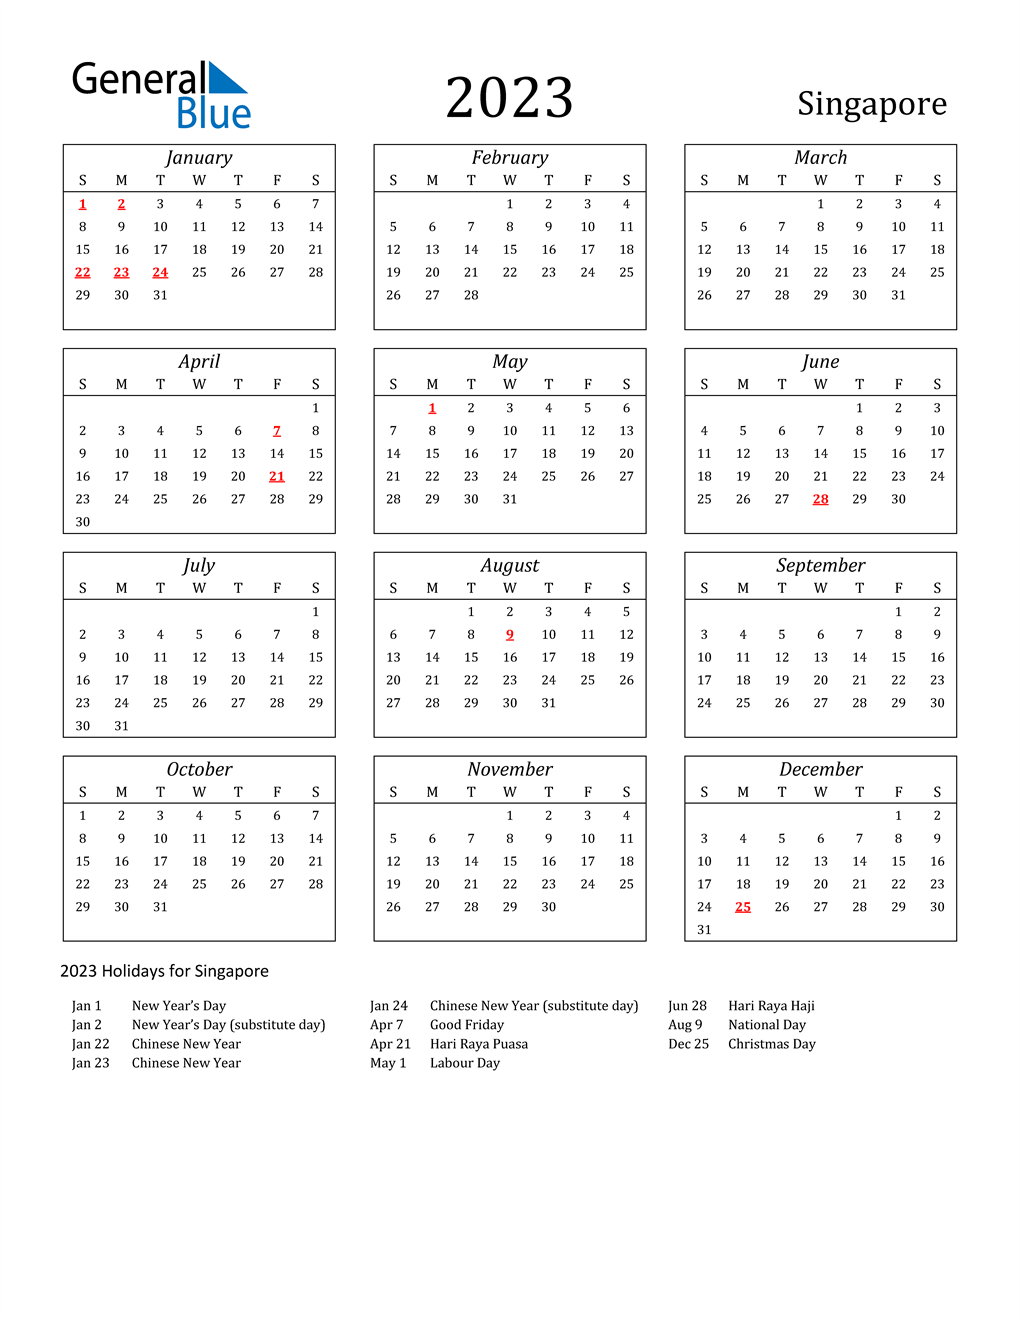 Pcsb 2022 23 Calendar 2023 Singapore Calendar With Holidays